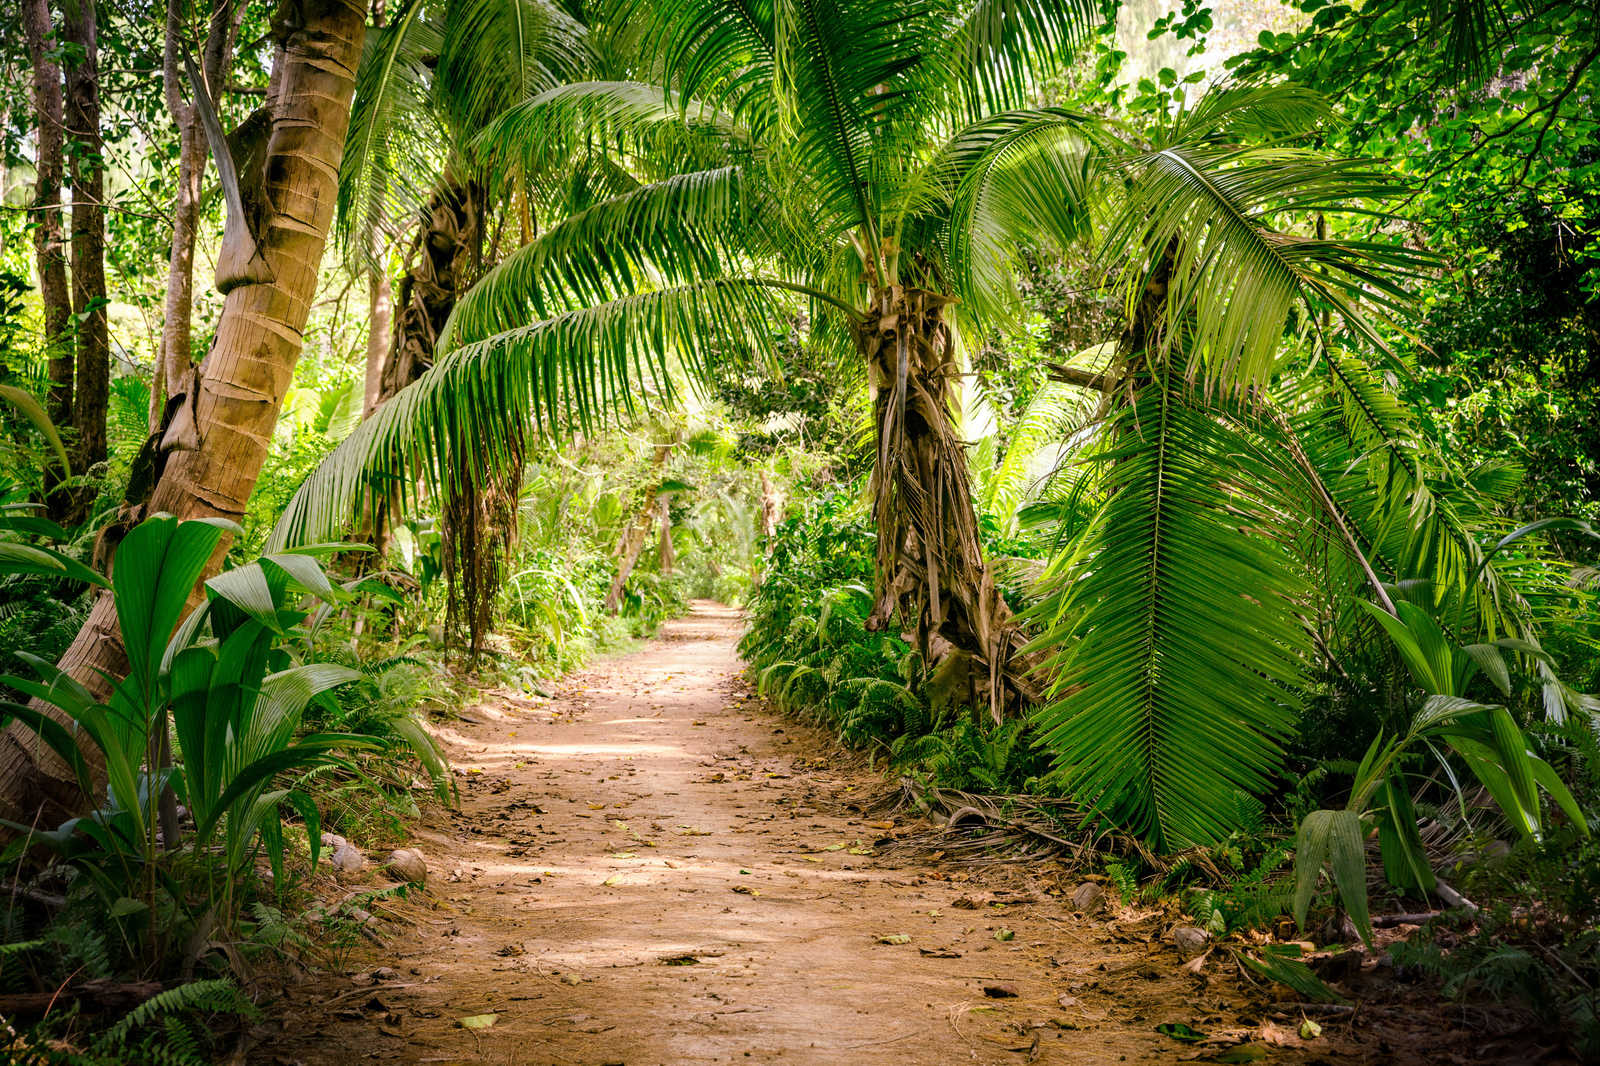             Toile avec chemin de palmiers à travers un paysage tropical - 0,90 m x 0,60 m
        